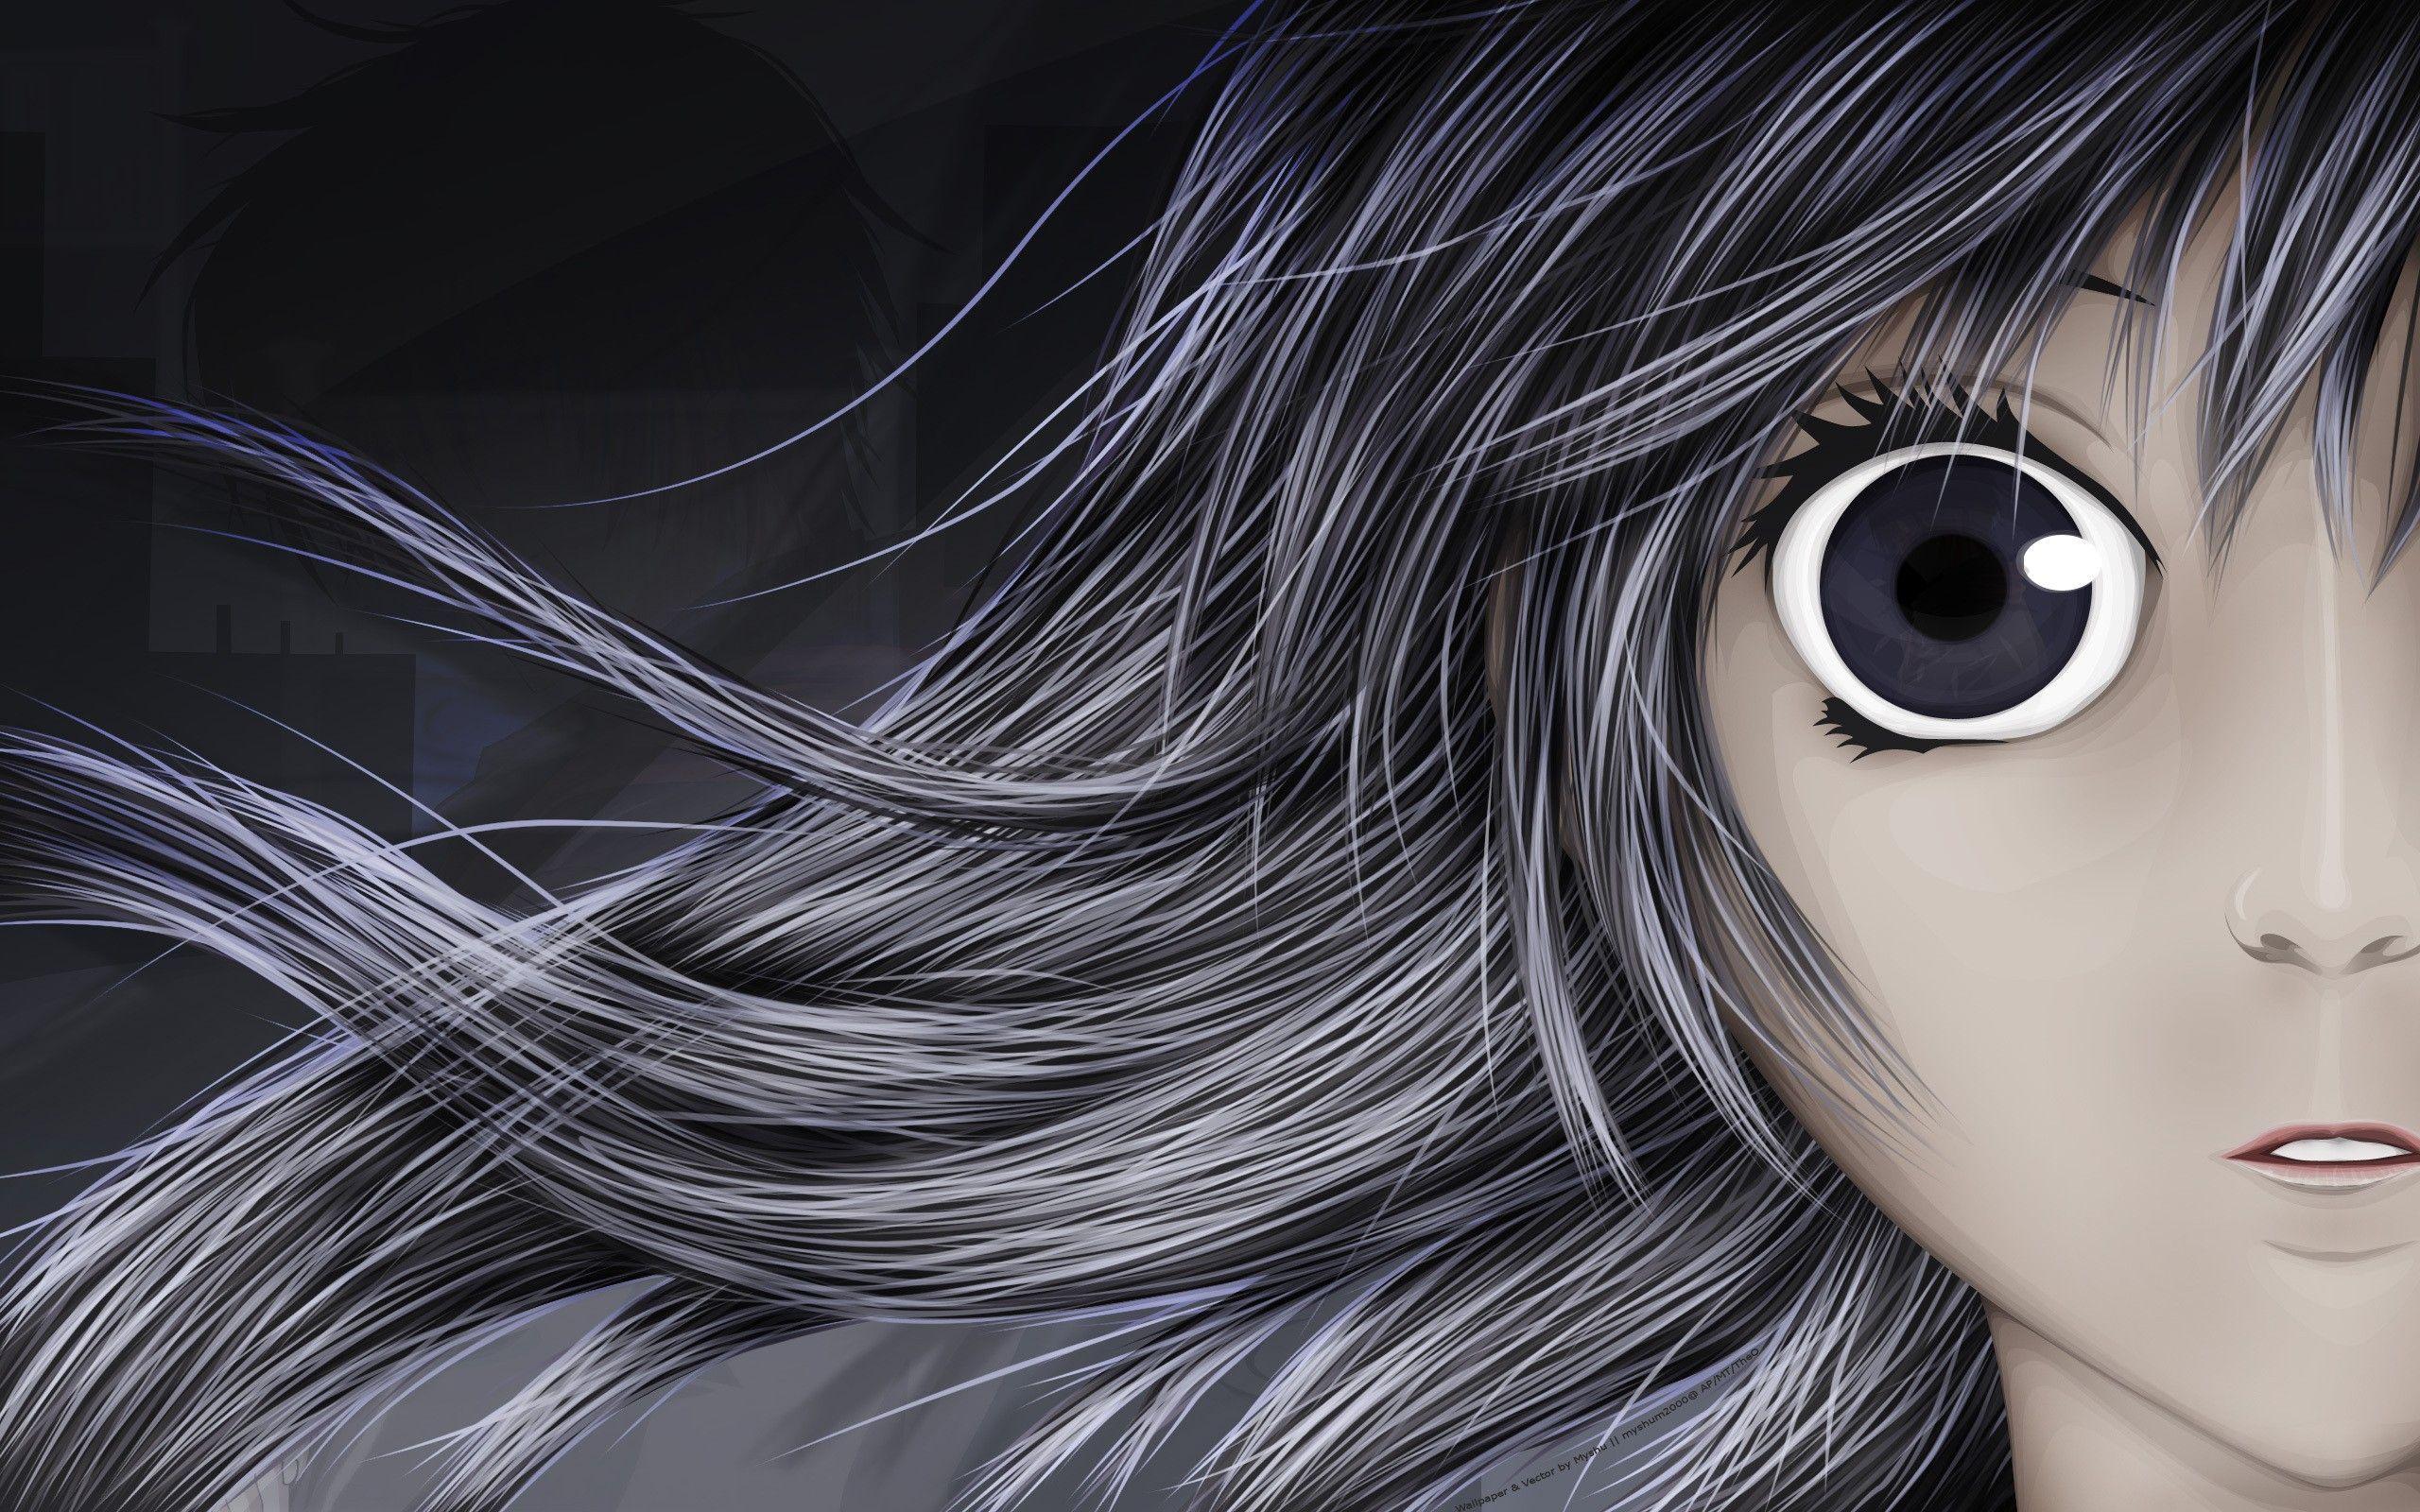 Anime Eyes Girl Full HD Wallpaper. Best Quality HD Wallpaper